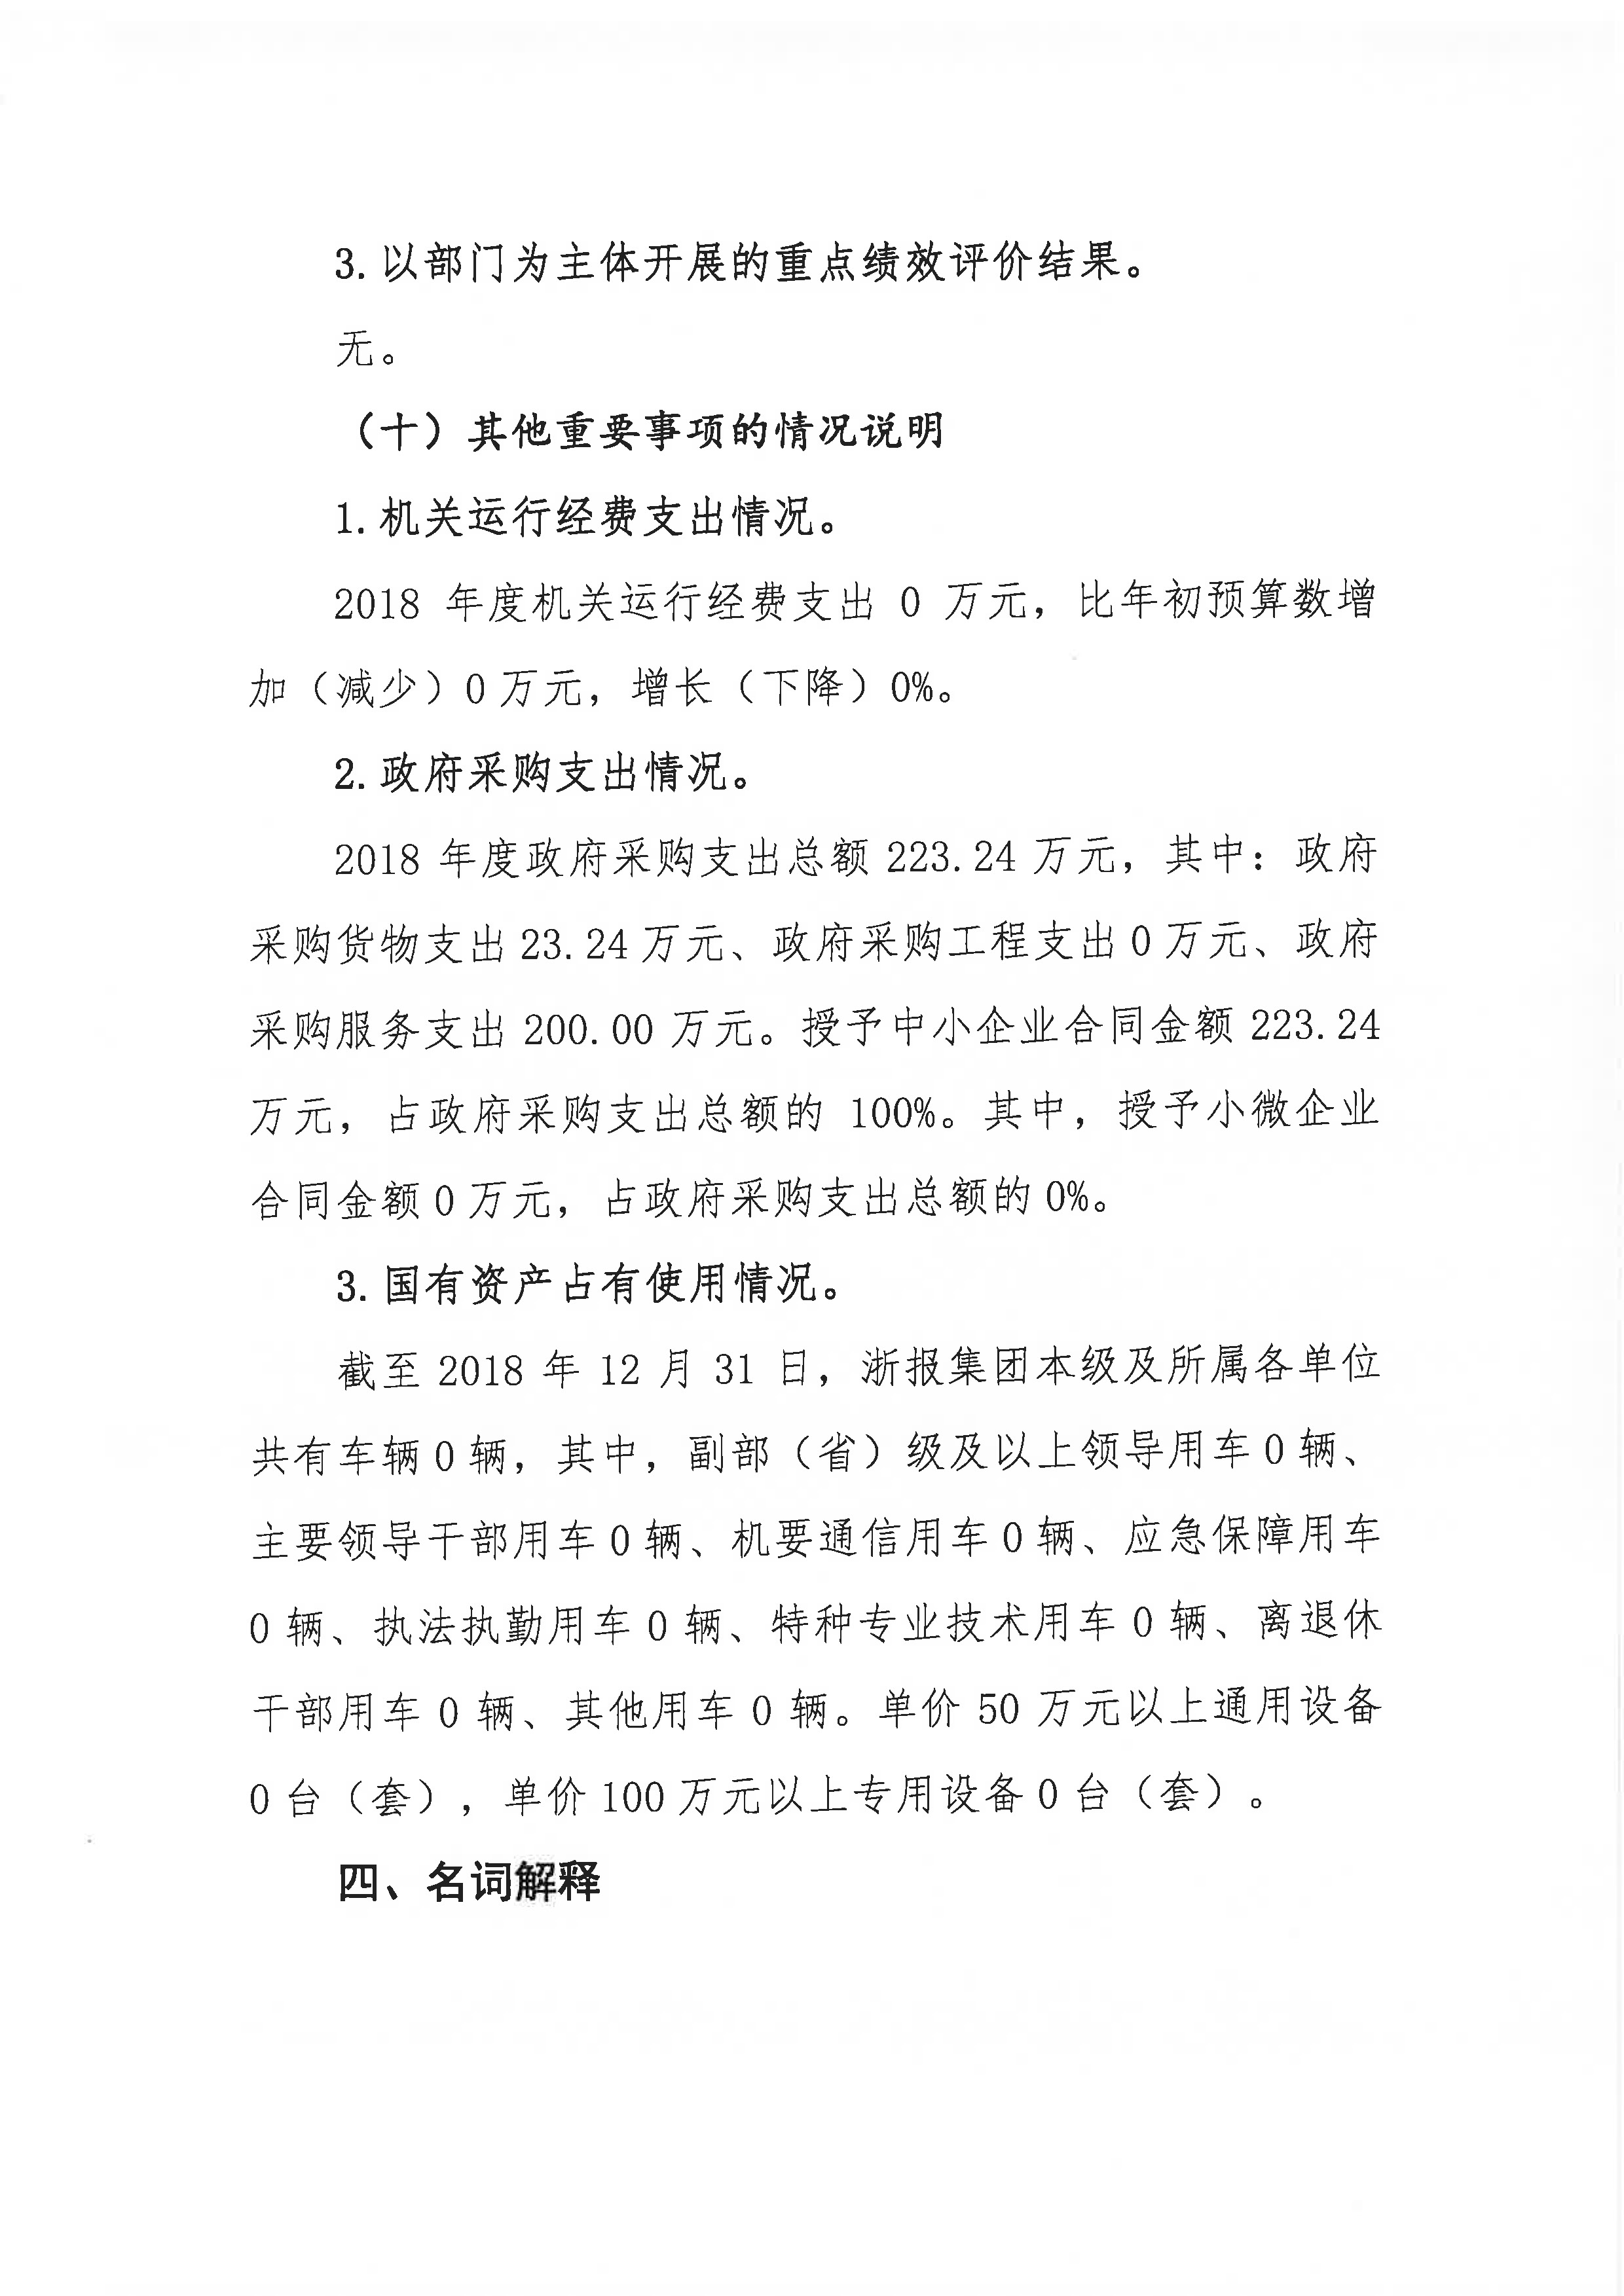 浙报集团2018年部门决算公开（终稿）_页面_11.jpg